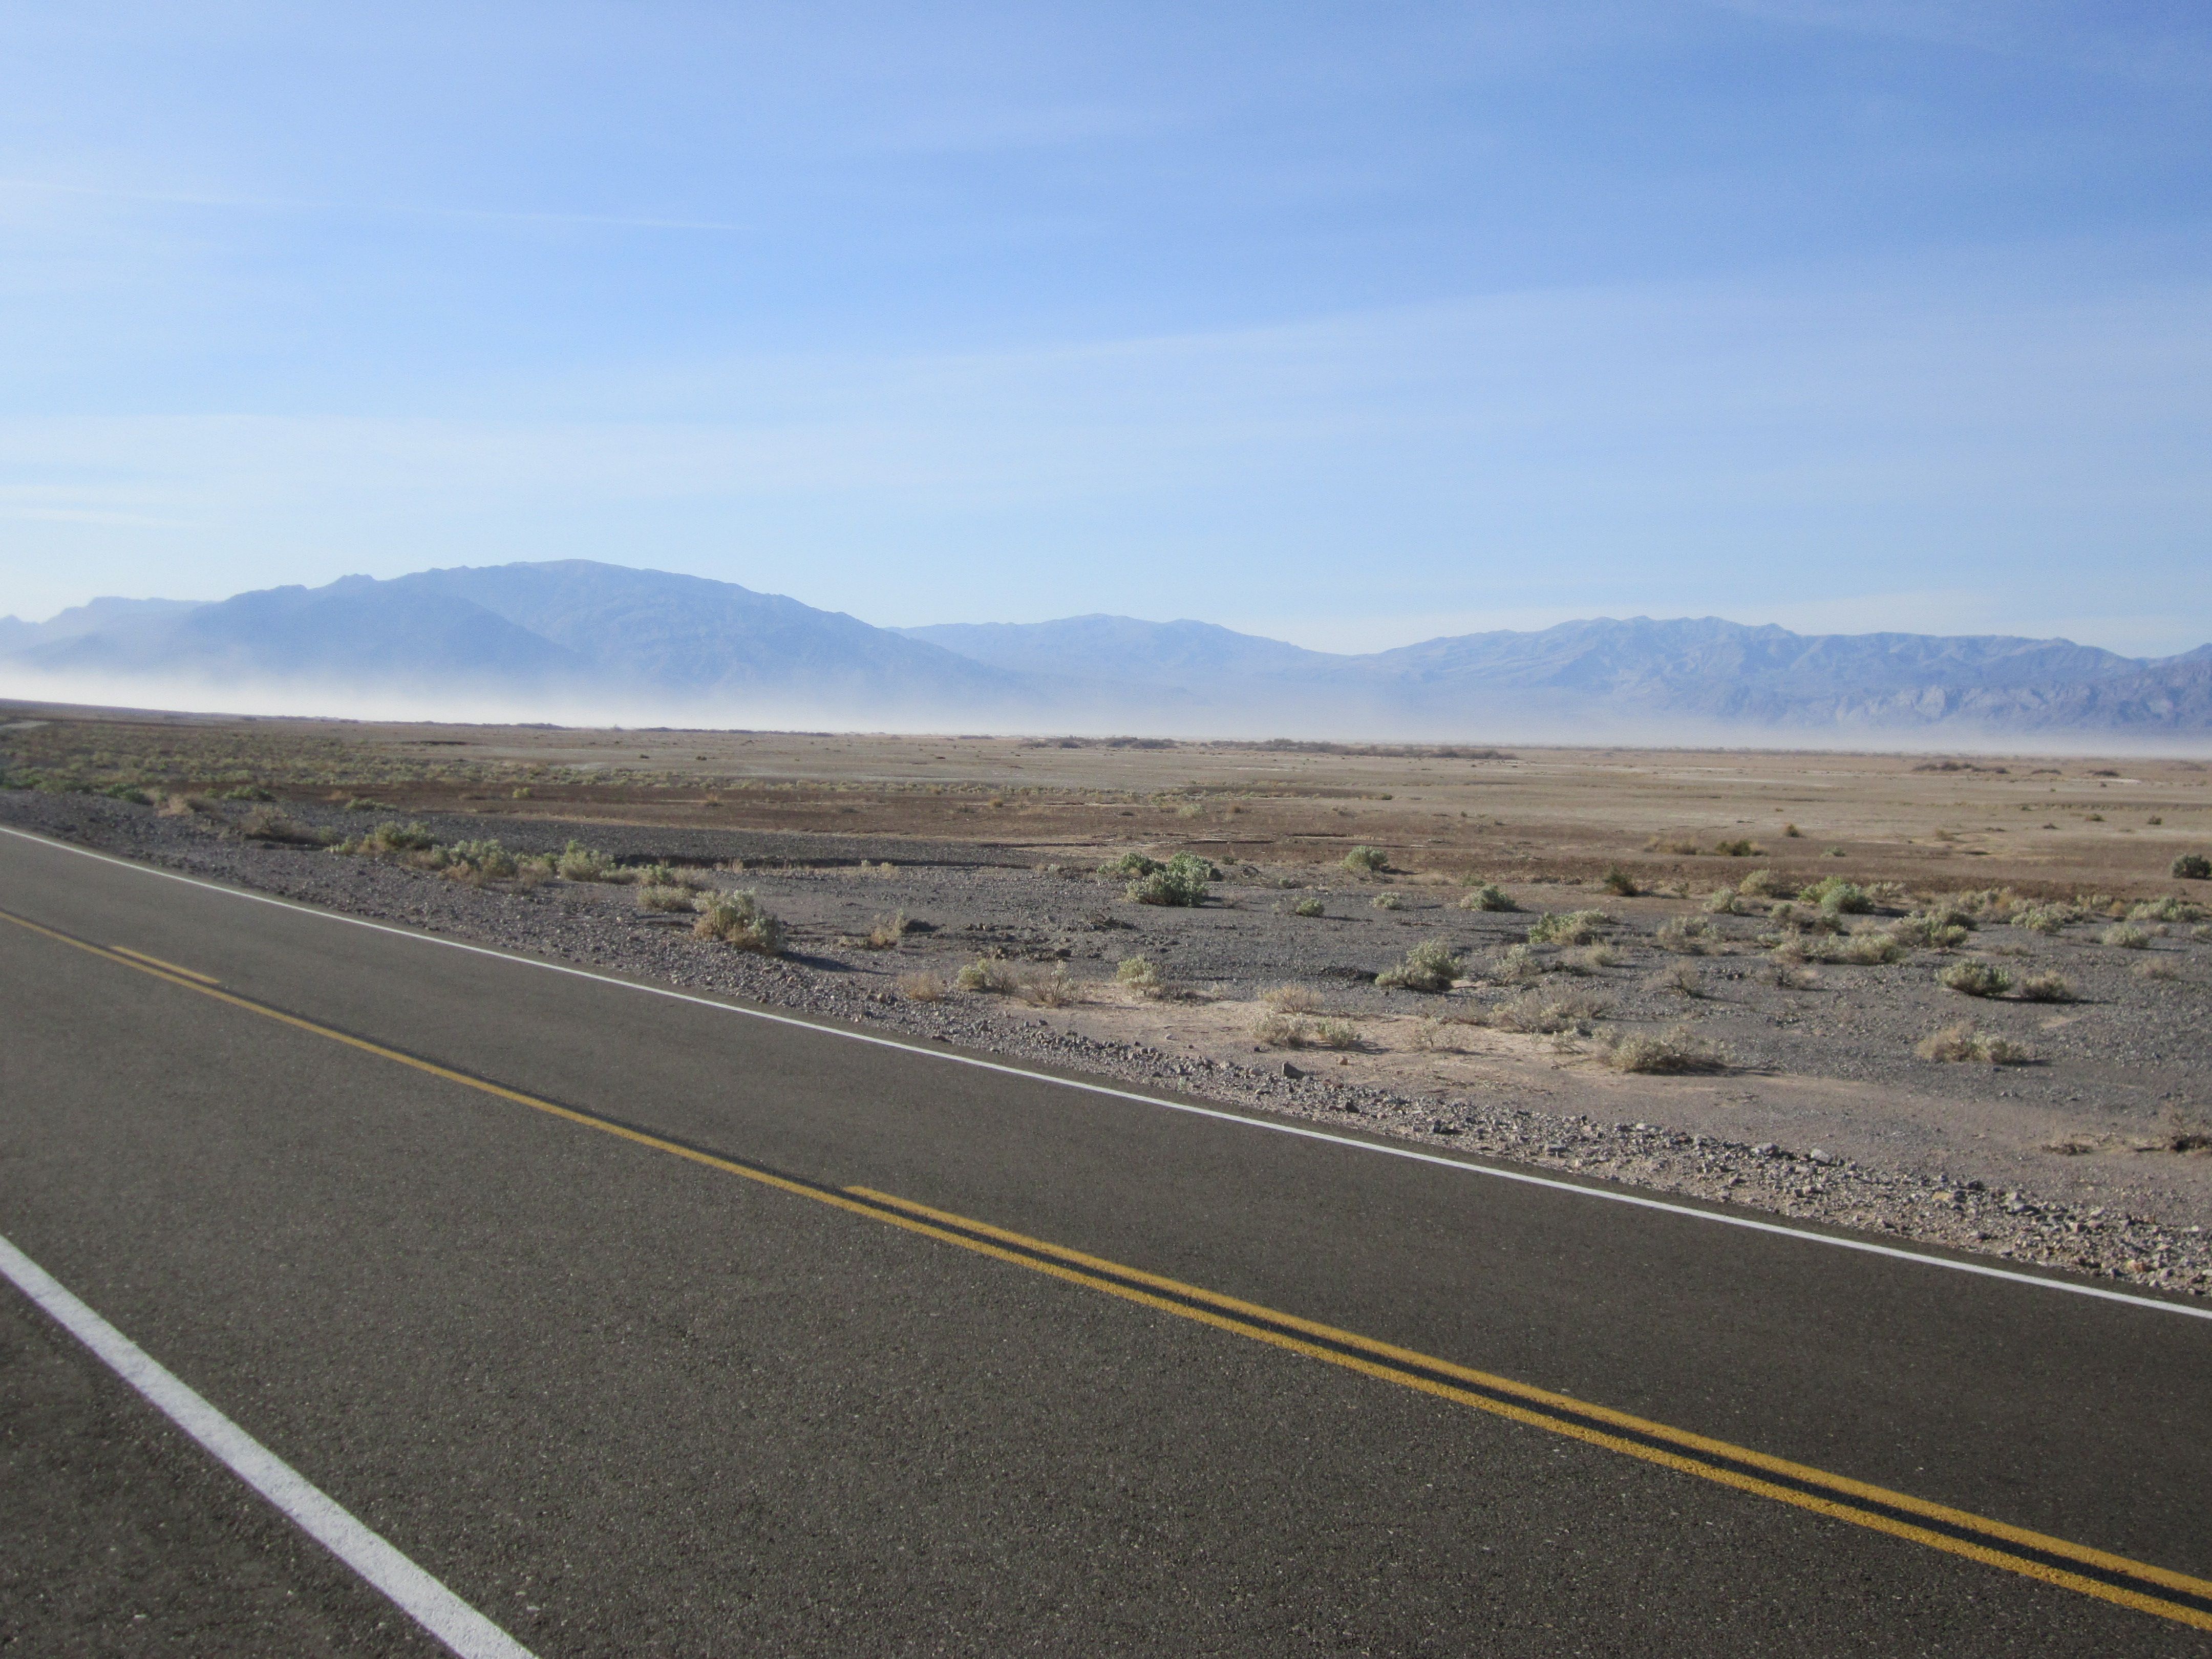 Desert Road Background